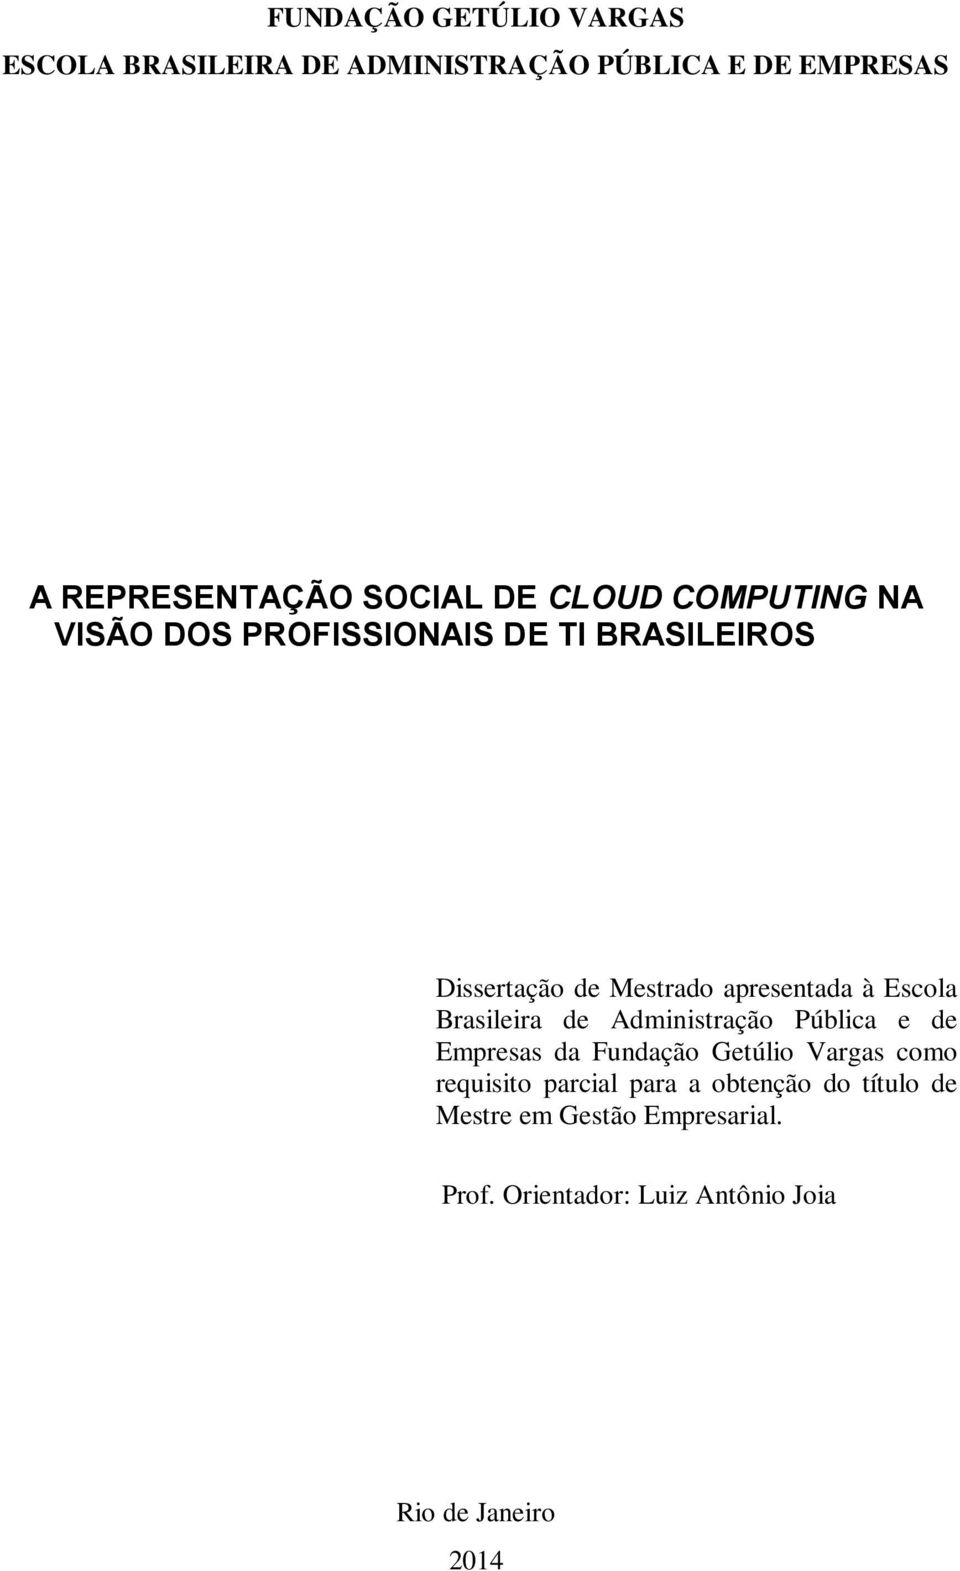 Brasileira de Administração Pública e de Empresas da Fundação Getúlio Vargas como requisito parcial para a